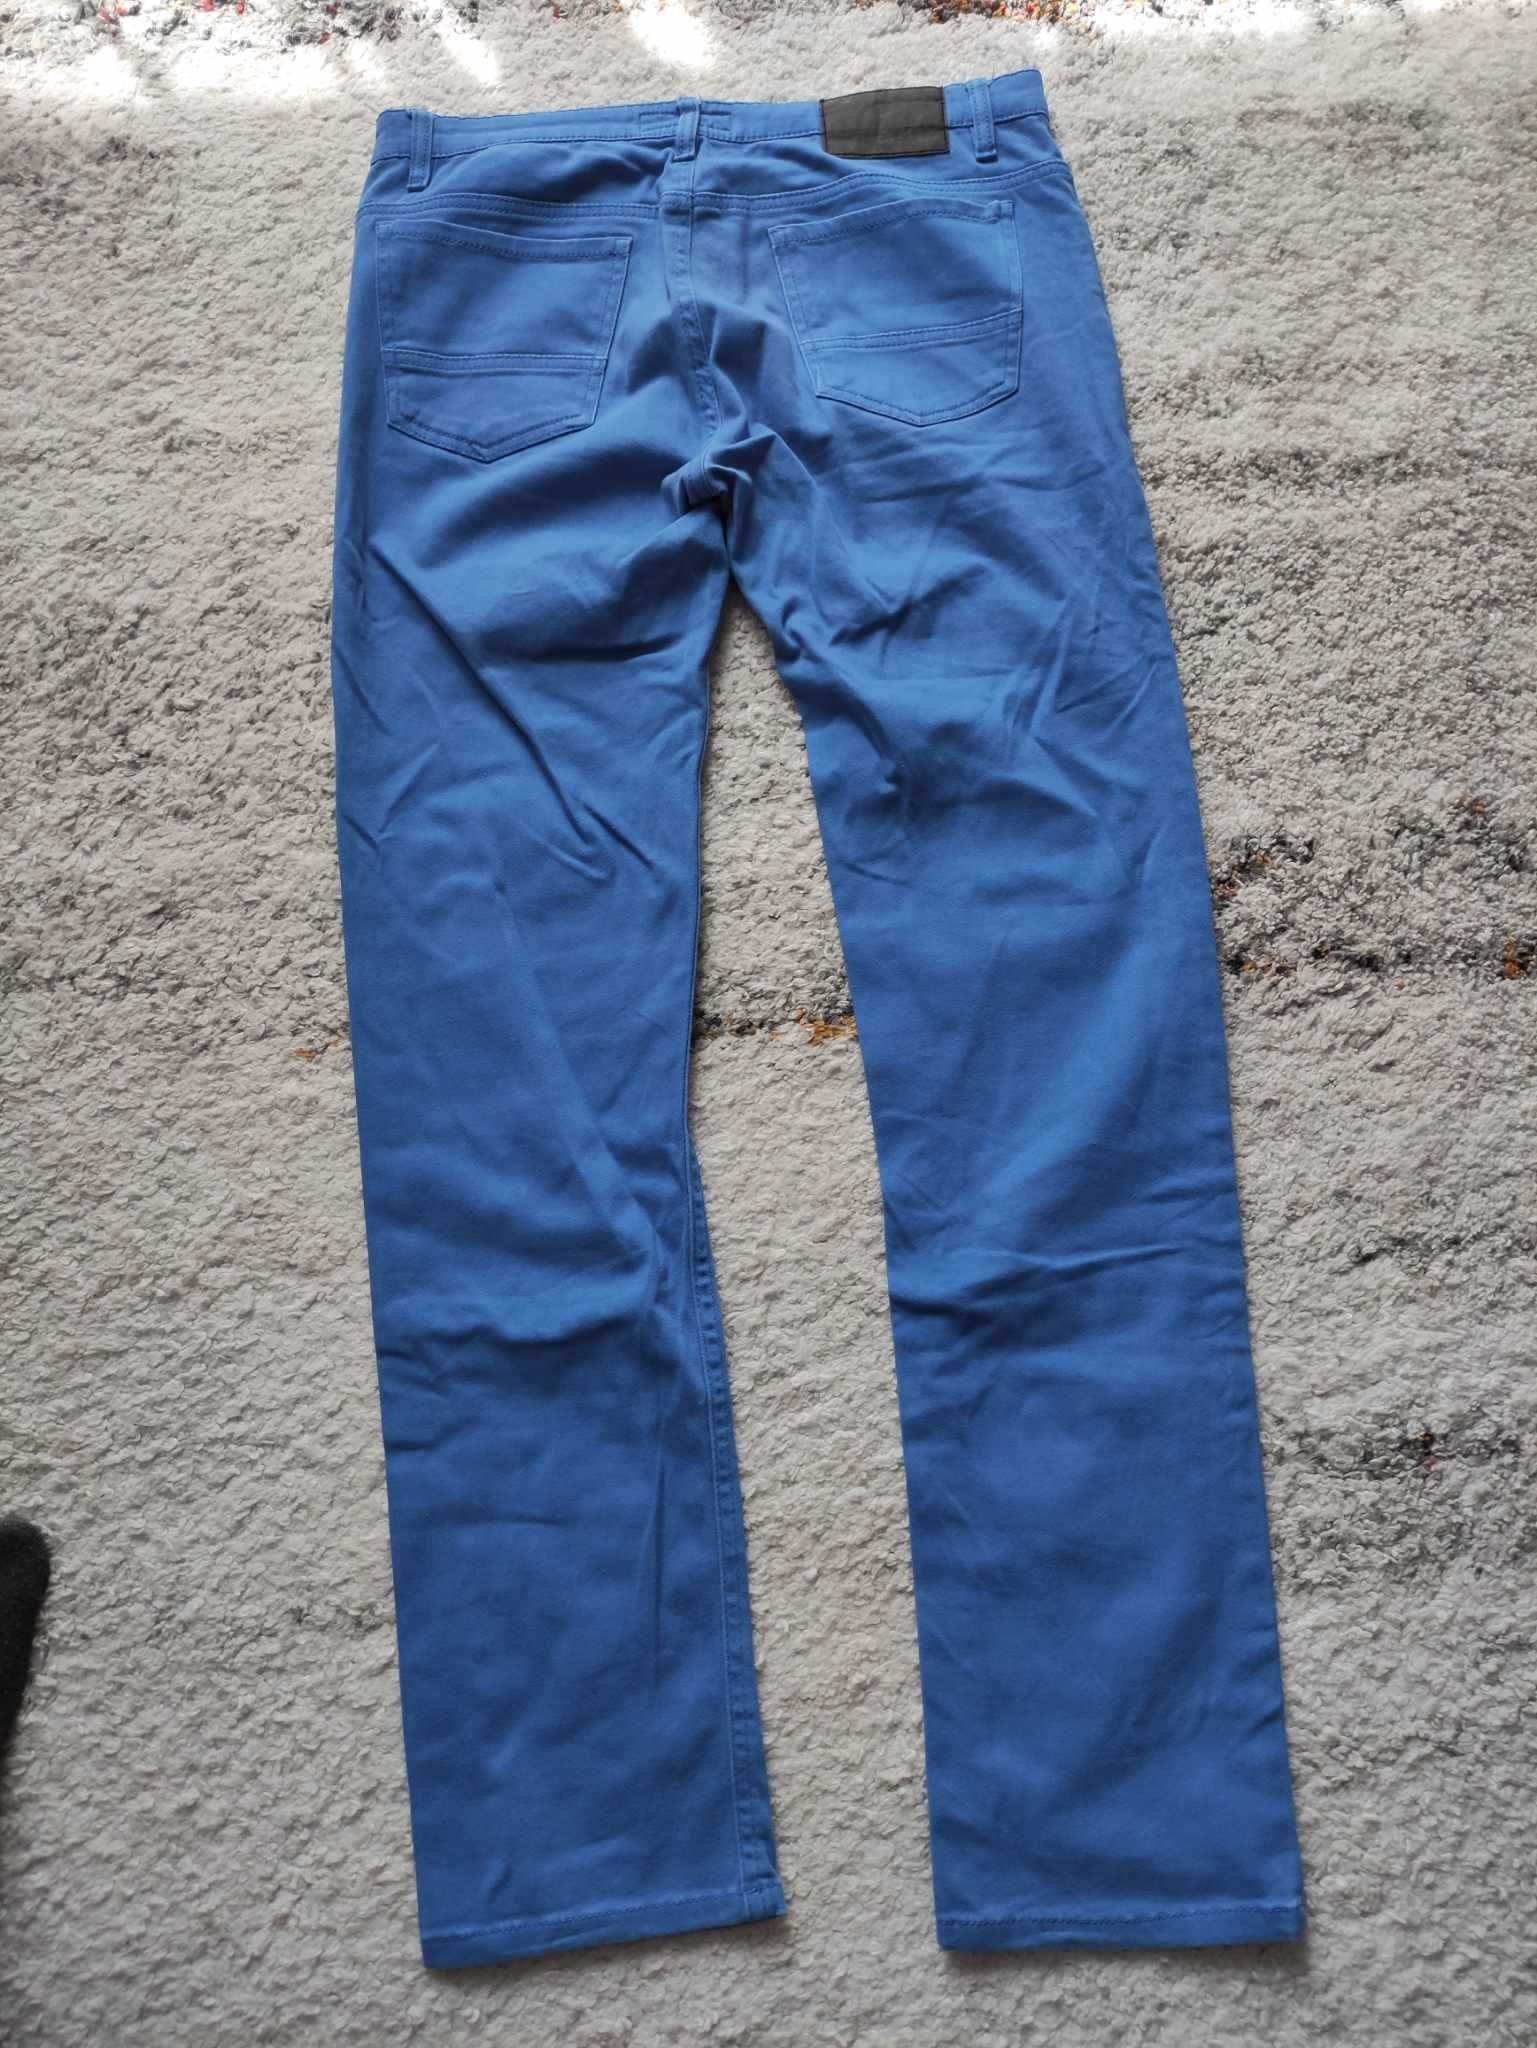 Spodnie męskie niebieskie spodnie klasyczne